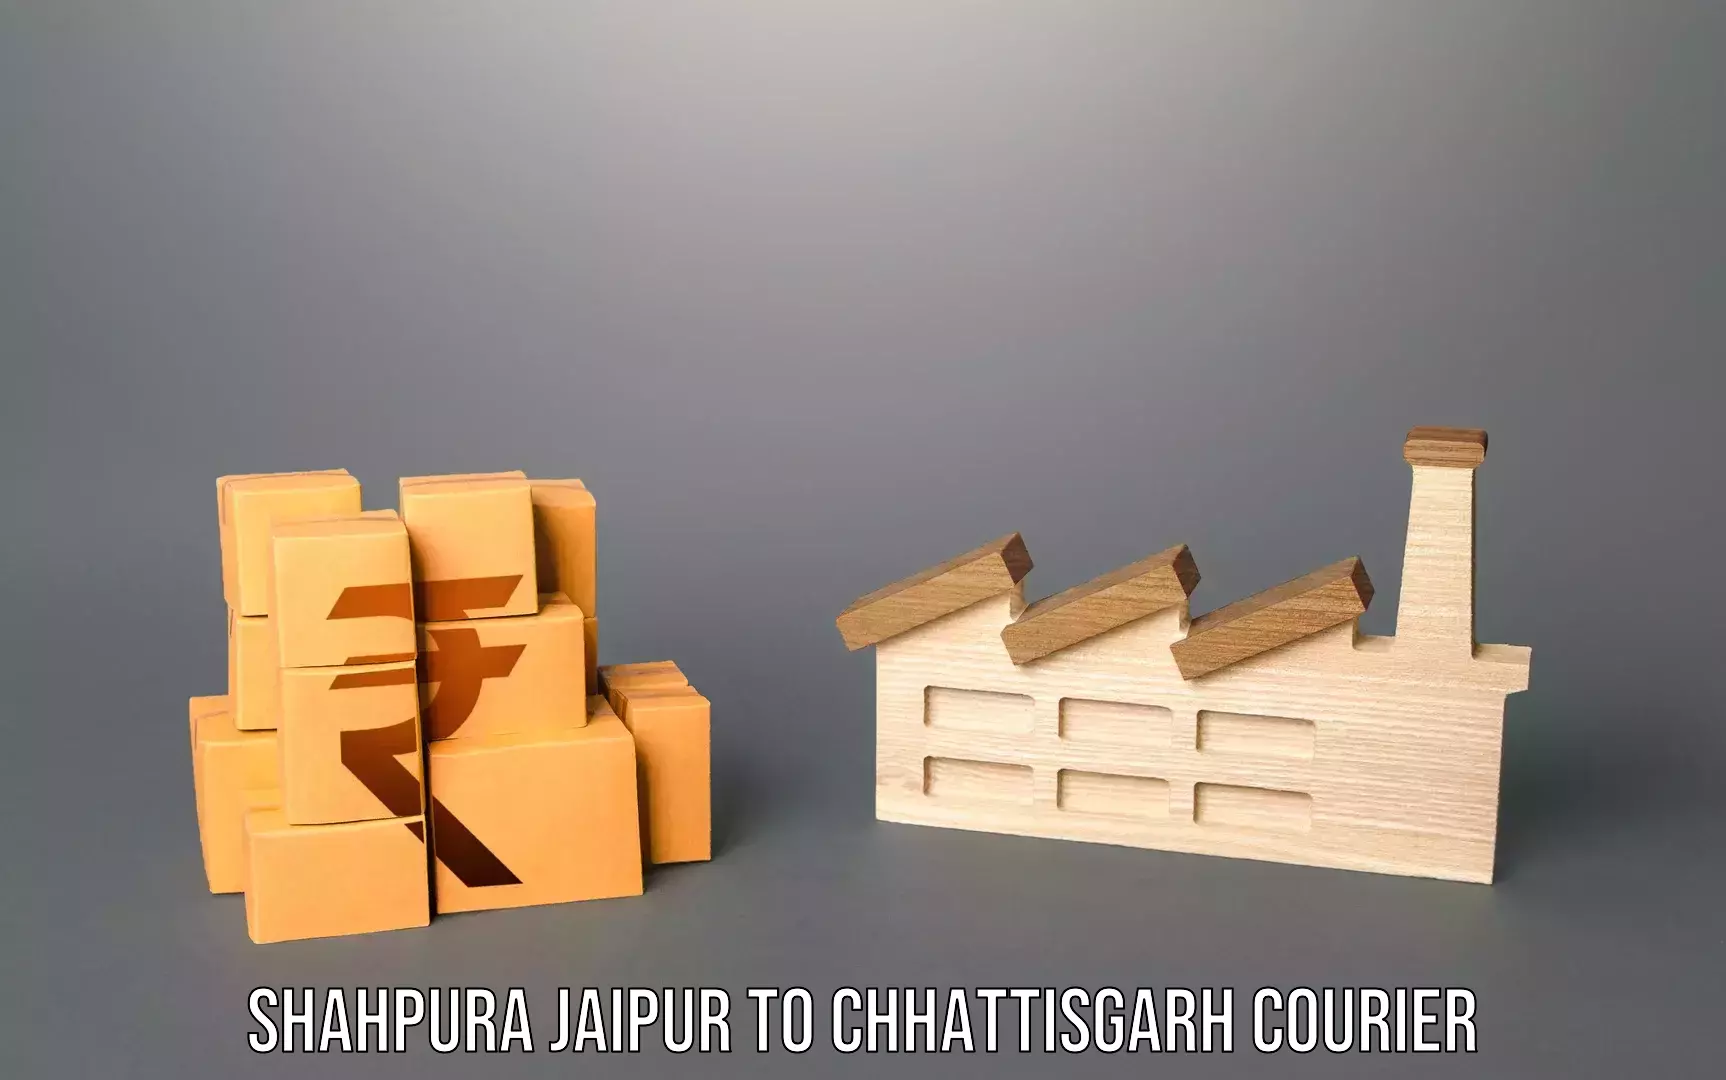 Luggage forwarding service Shahpura Jaipur to Raipur